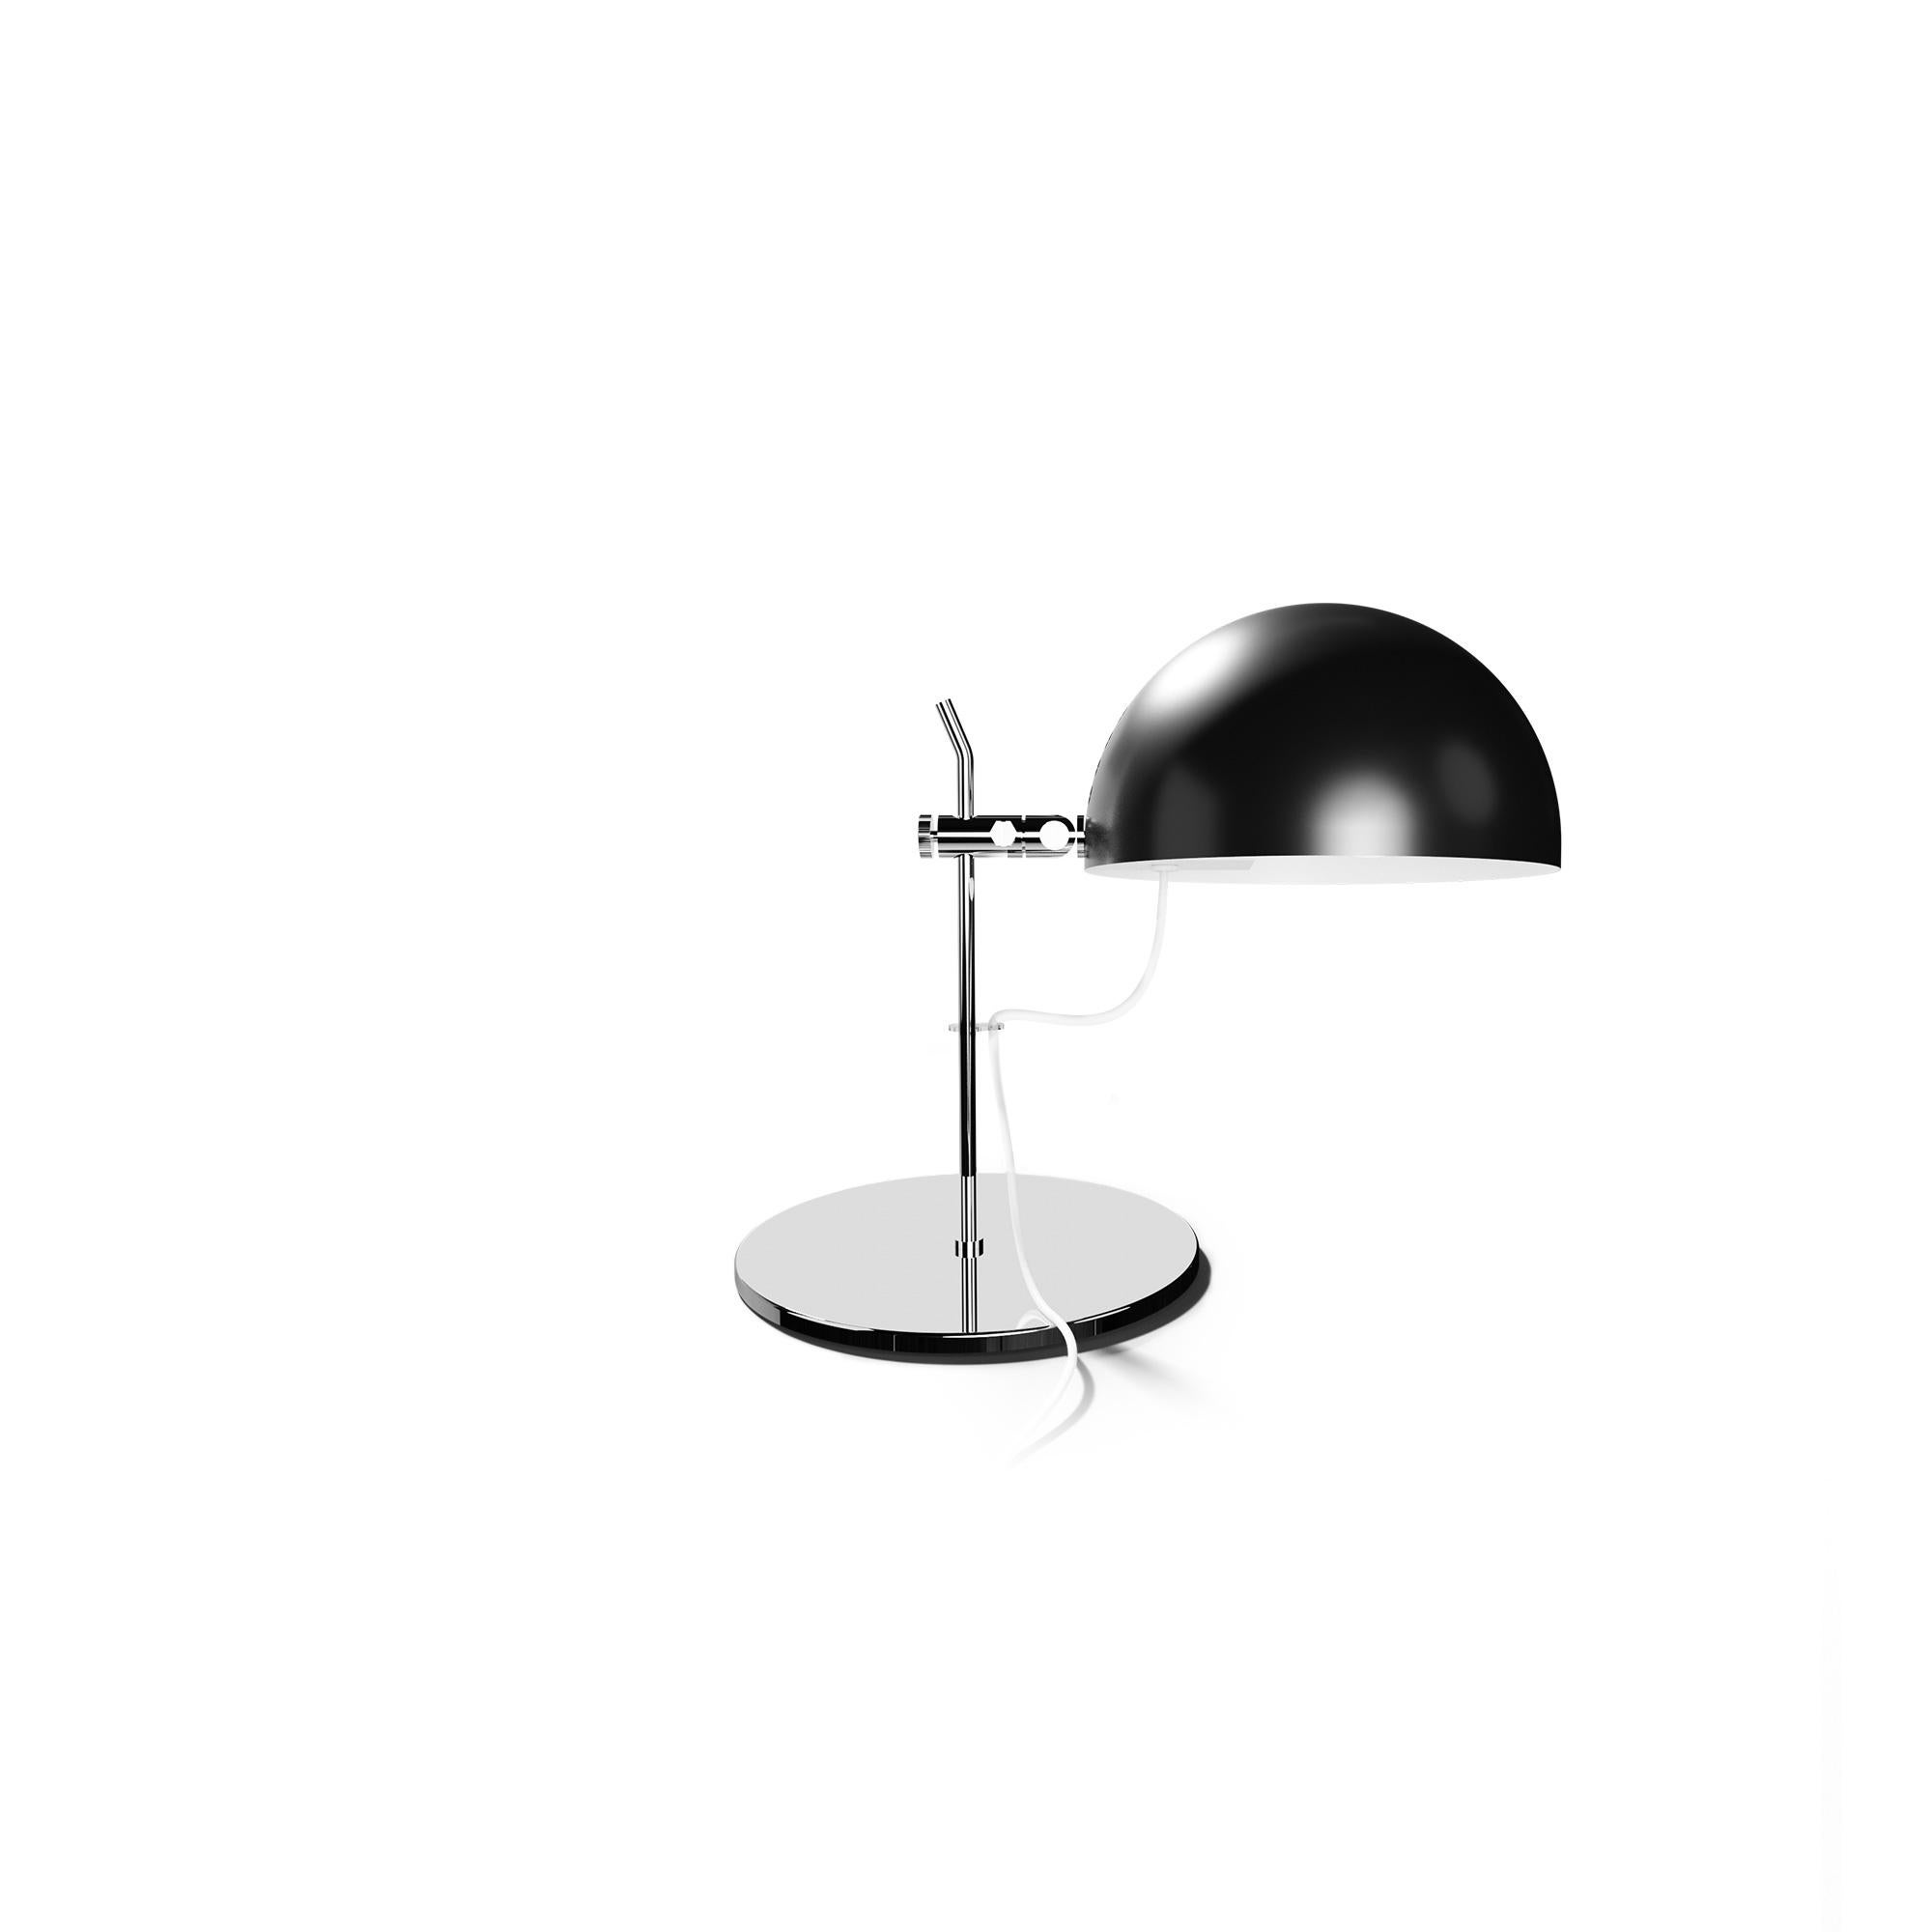 Alain Richard 'A21' Desk Lamp in White for Disderot For Sale 6